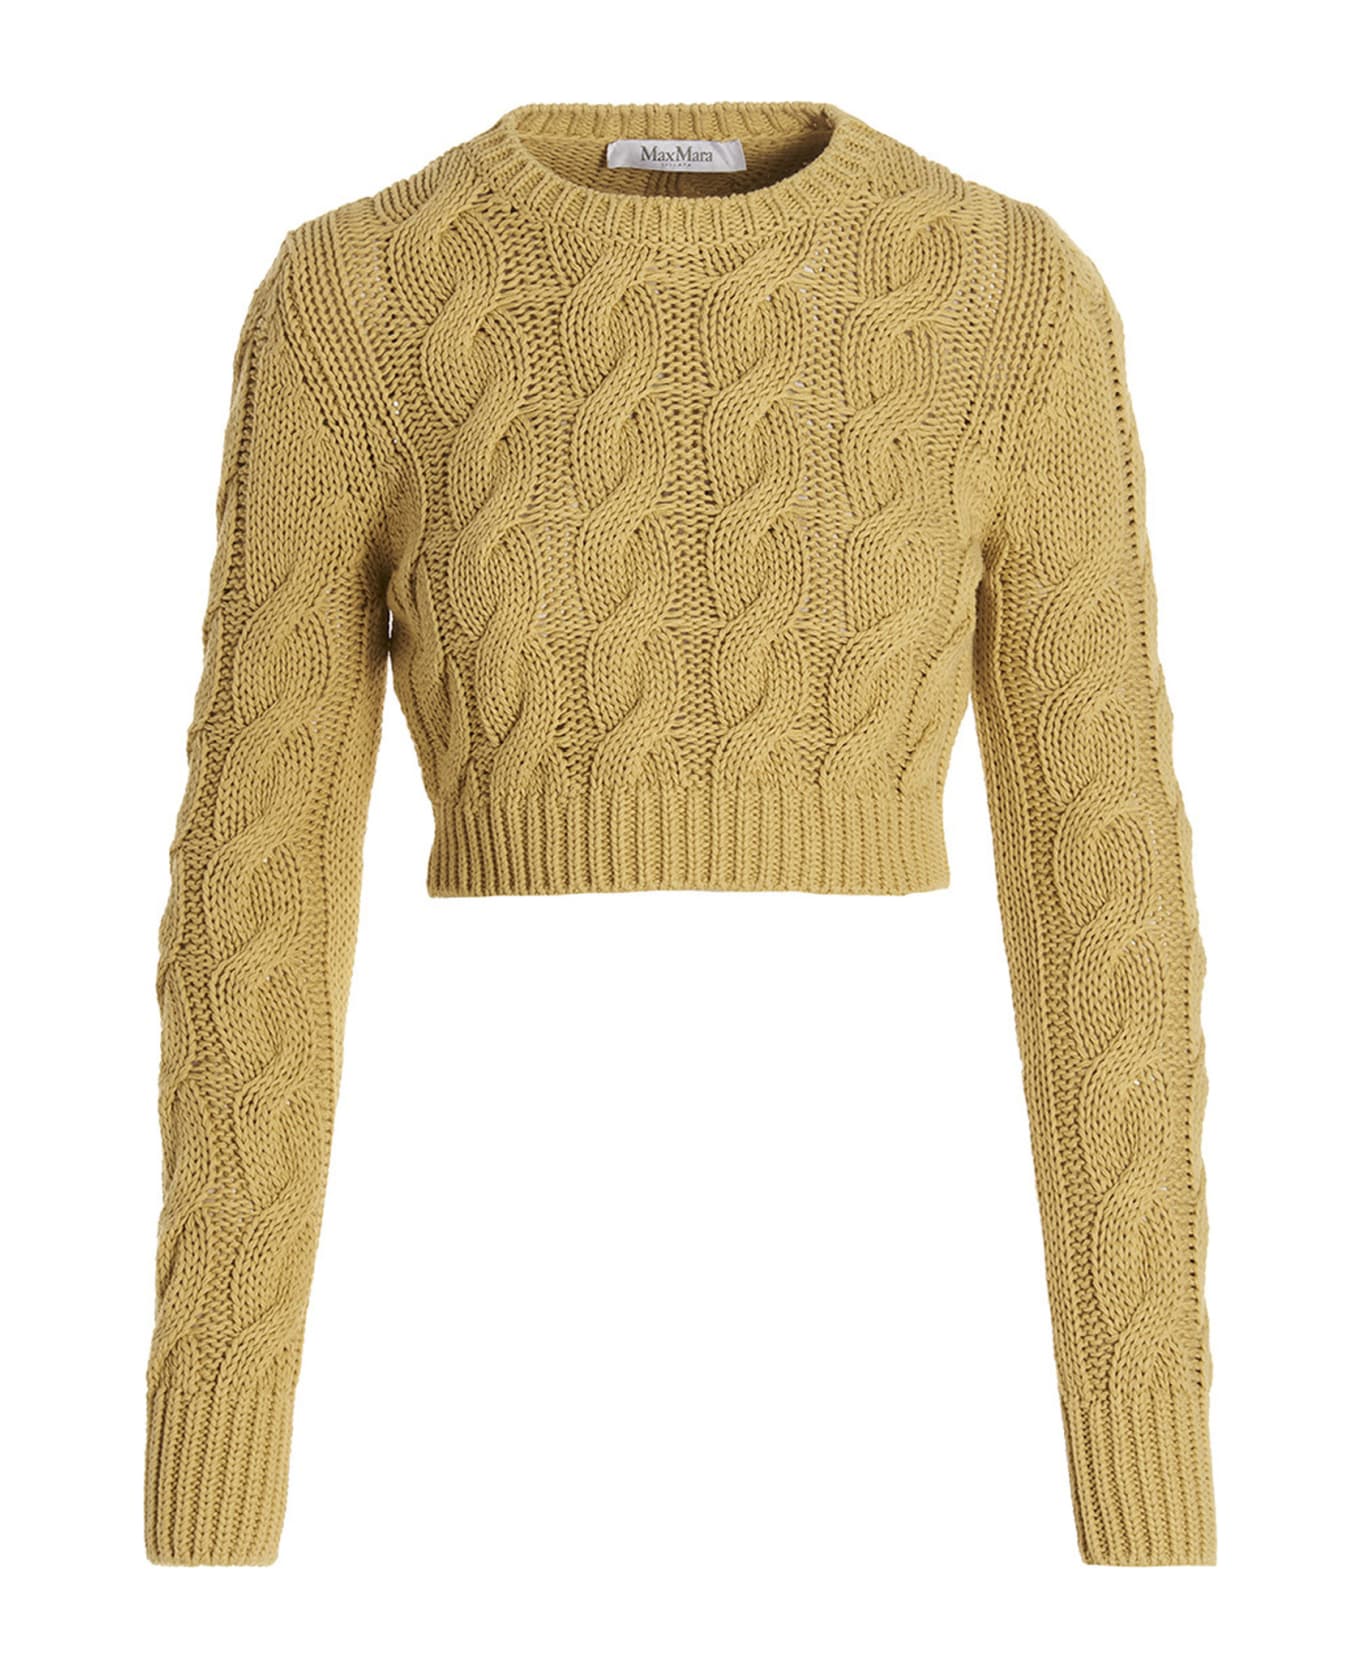 Max Mara 'sphinx' Sweater - Yellow